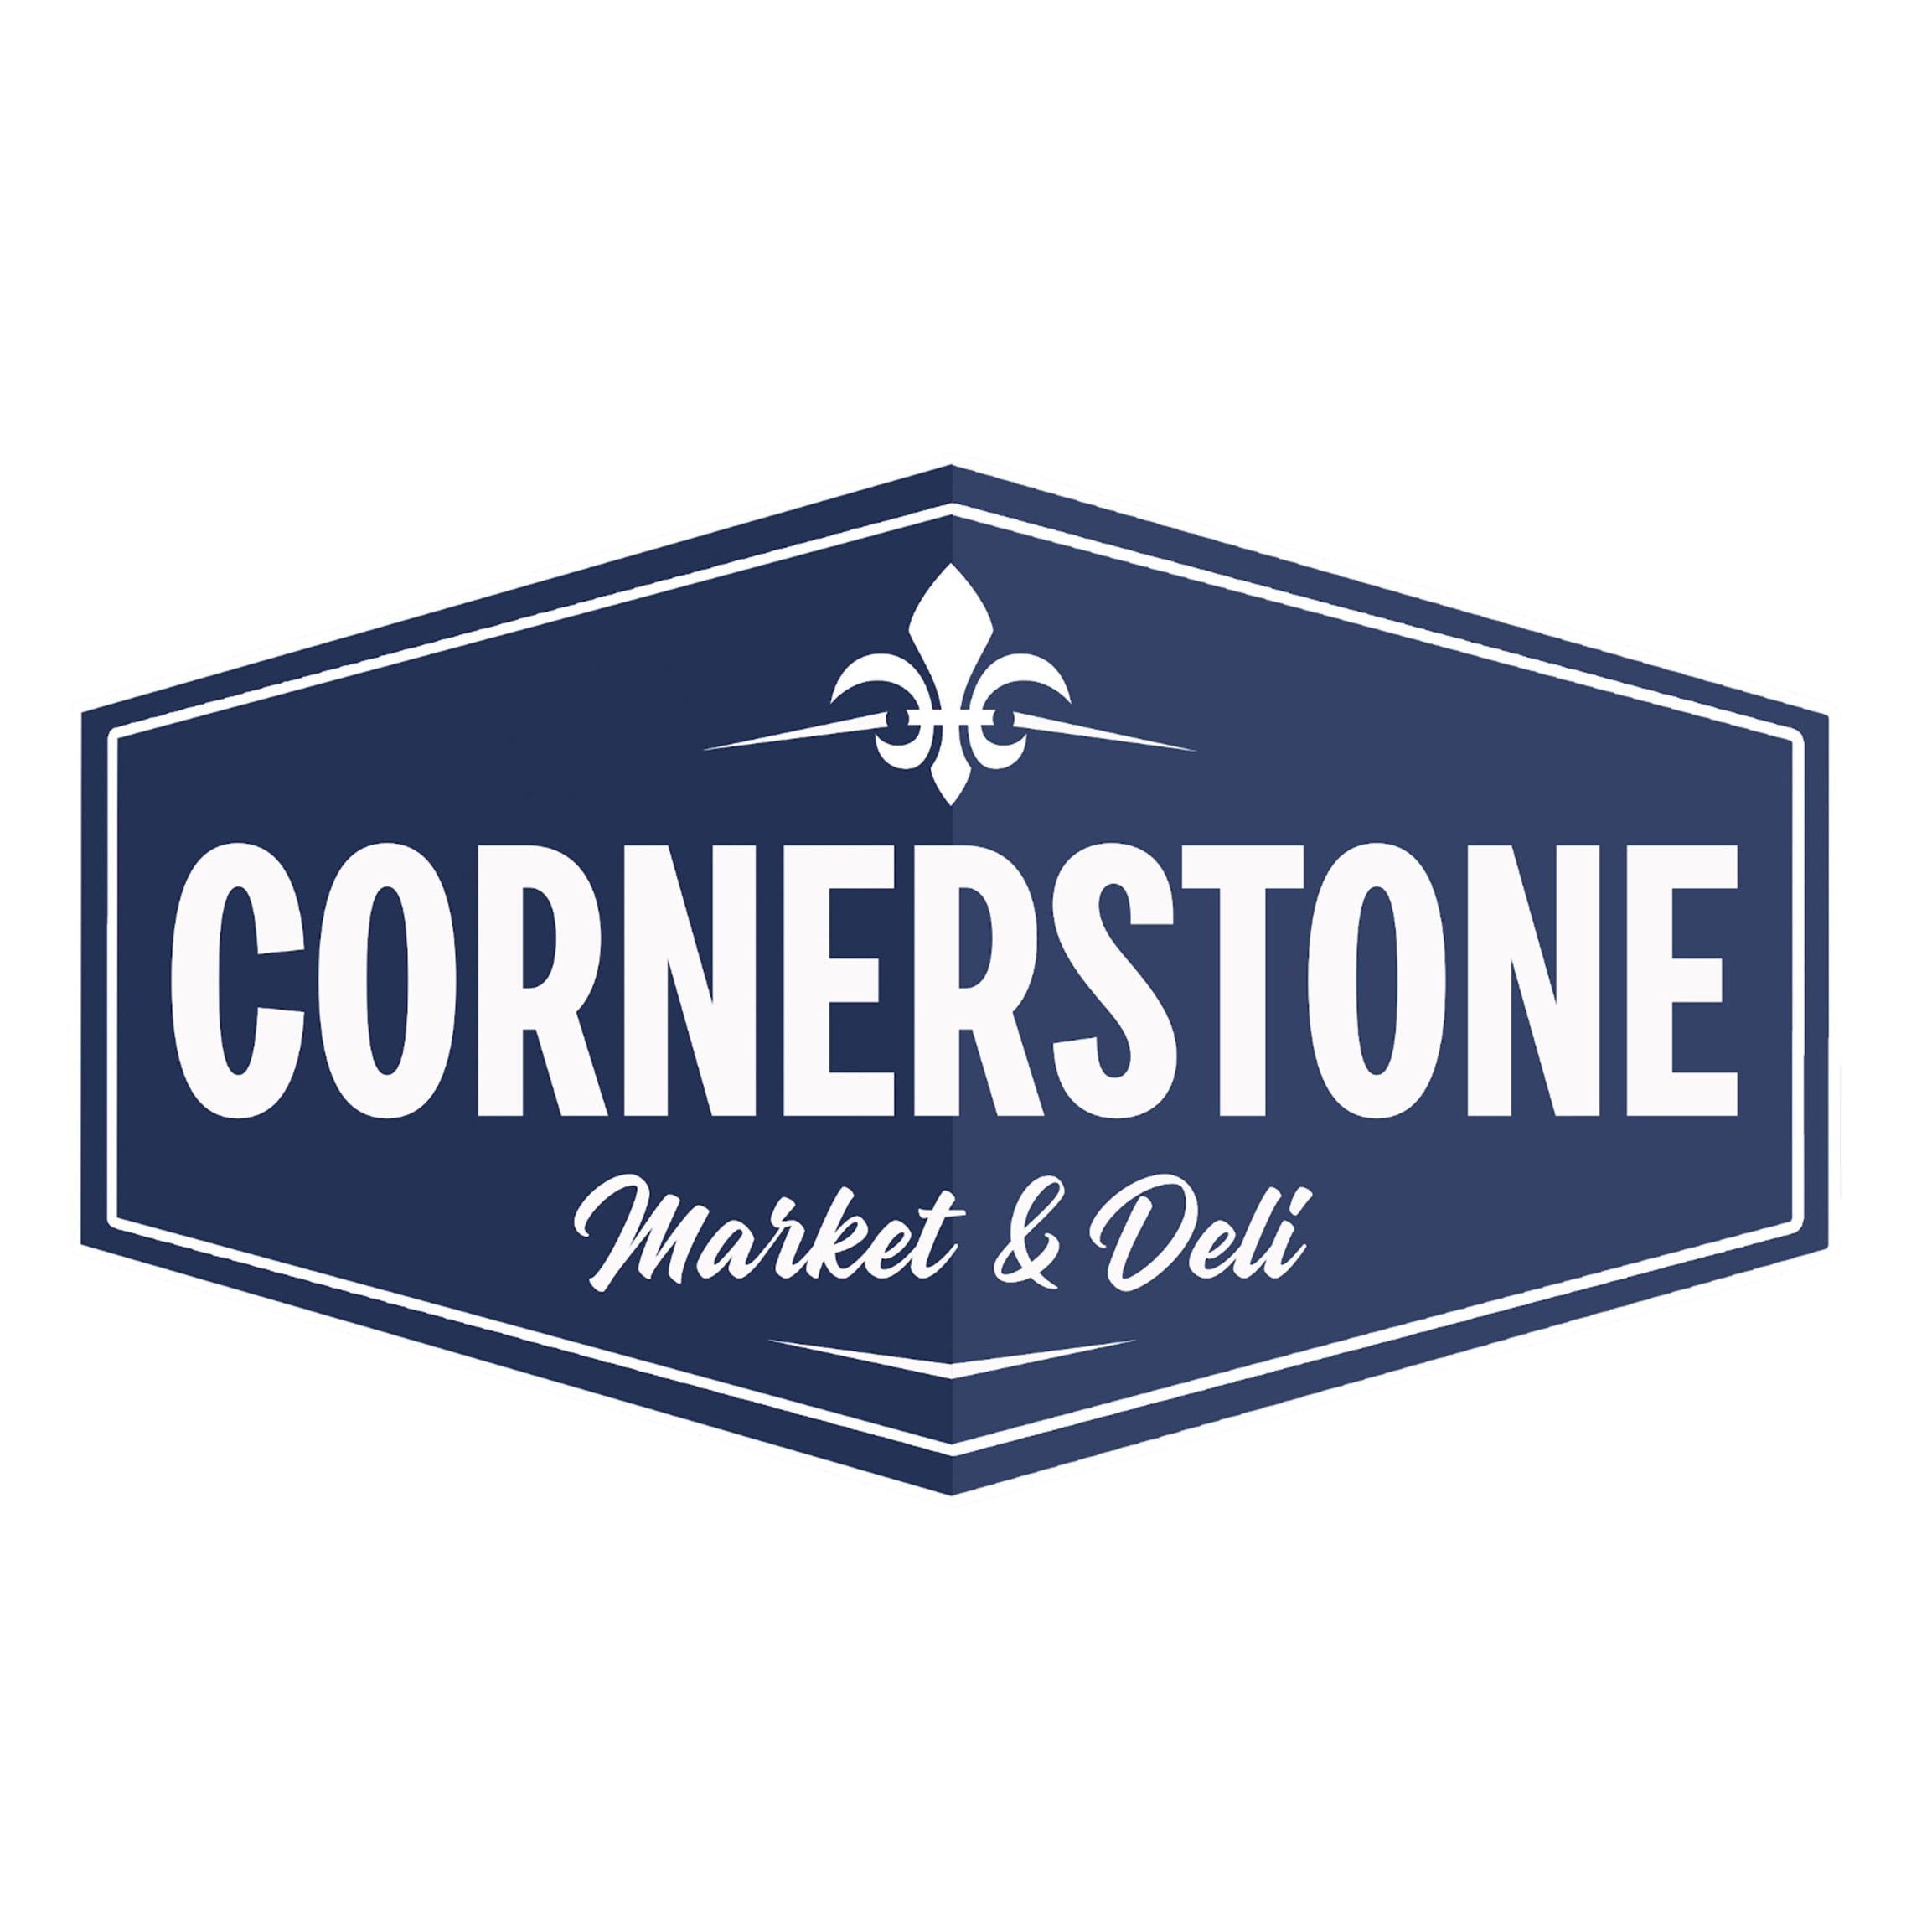 Cornerstone Market & Deli